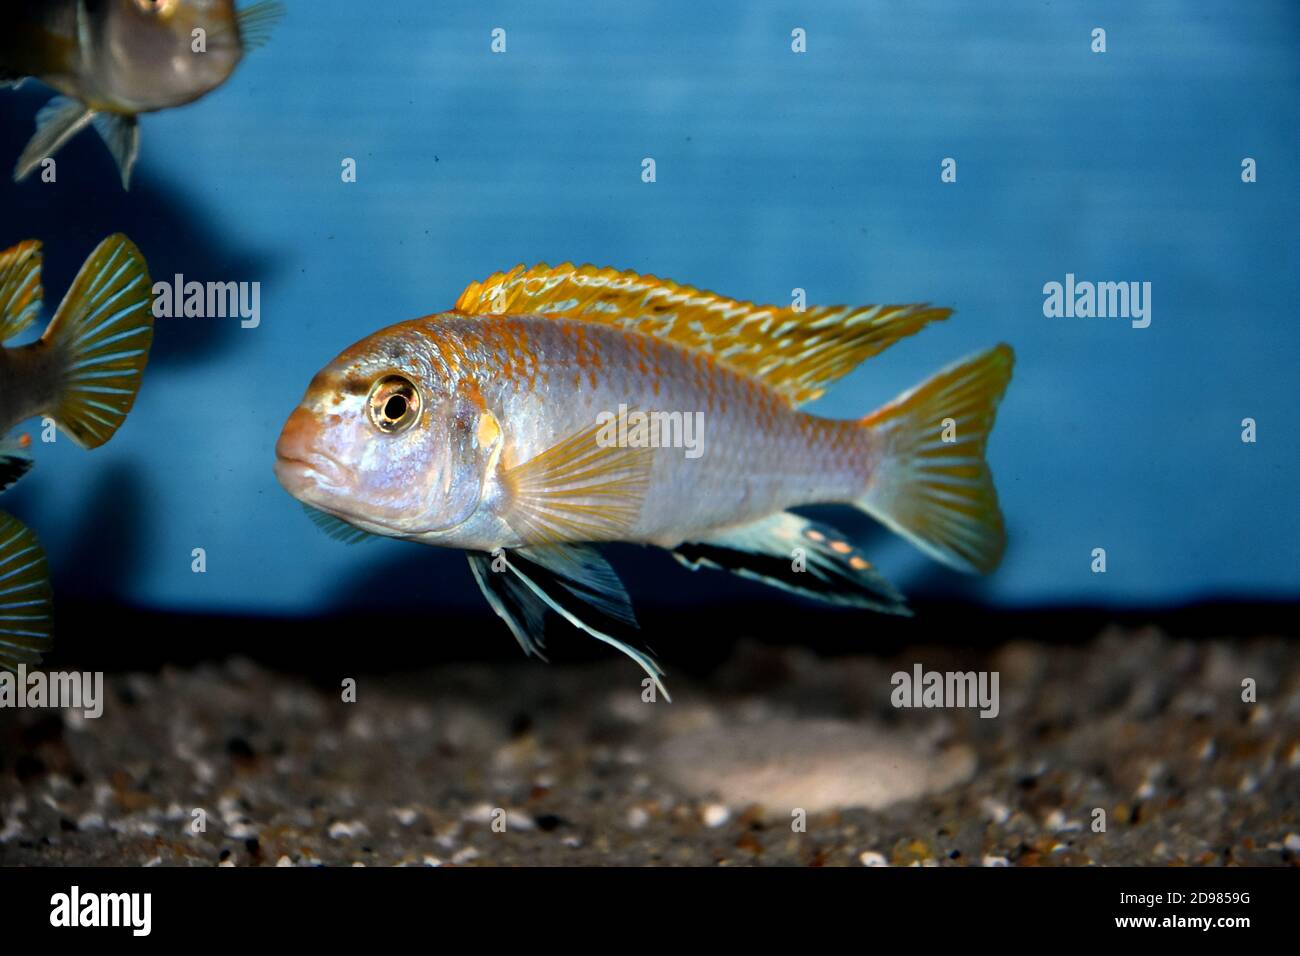 The Perlmutt cichlid fish - labidochromis perlmutt Stock Photo